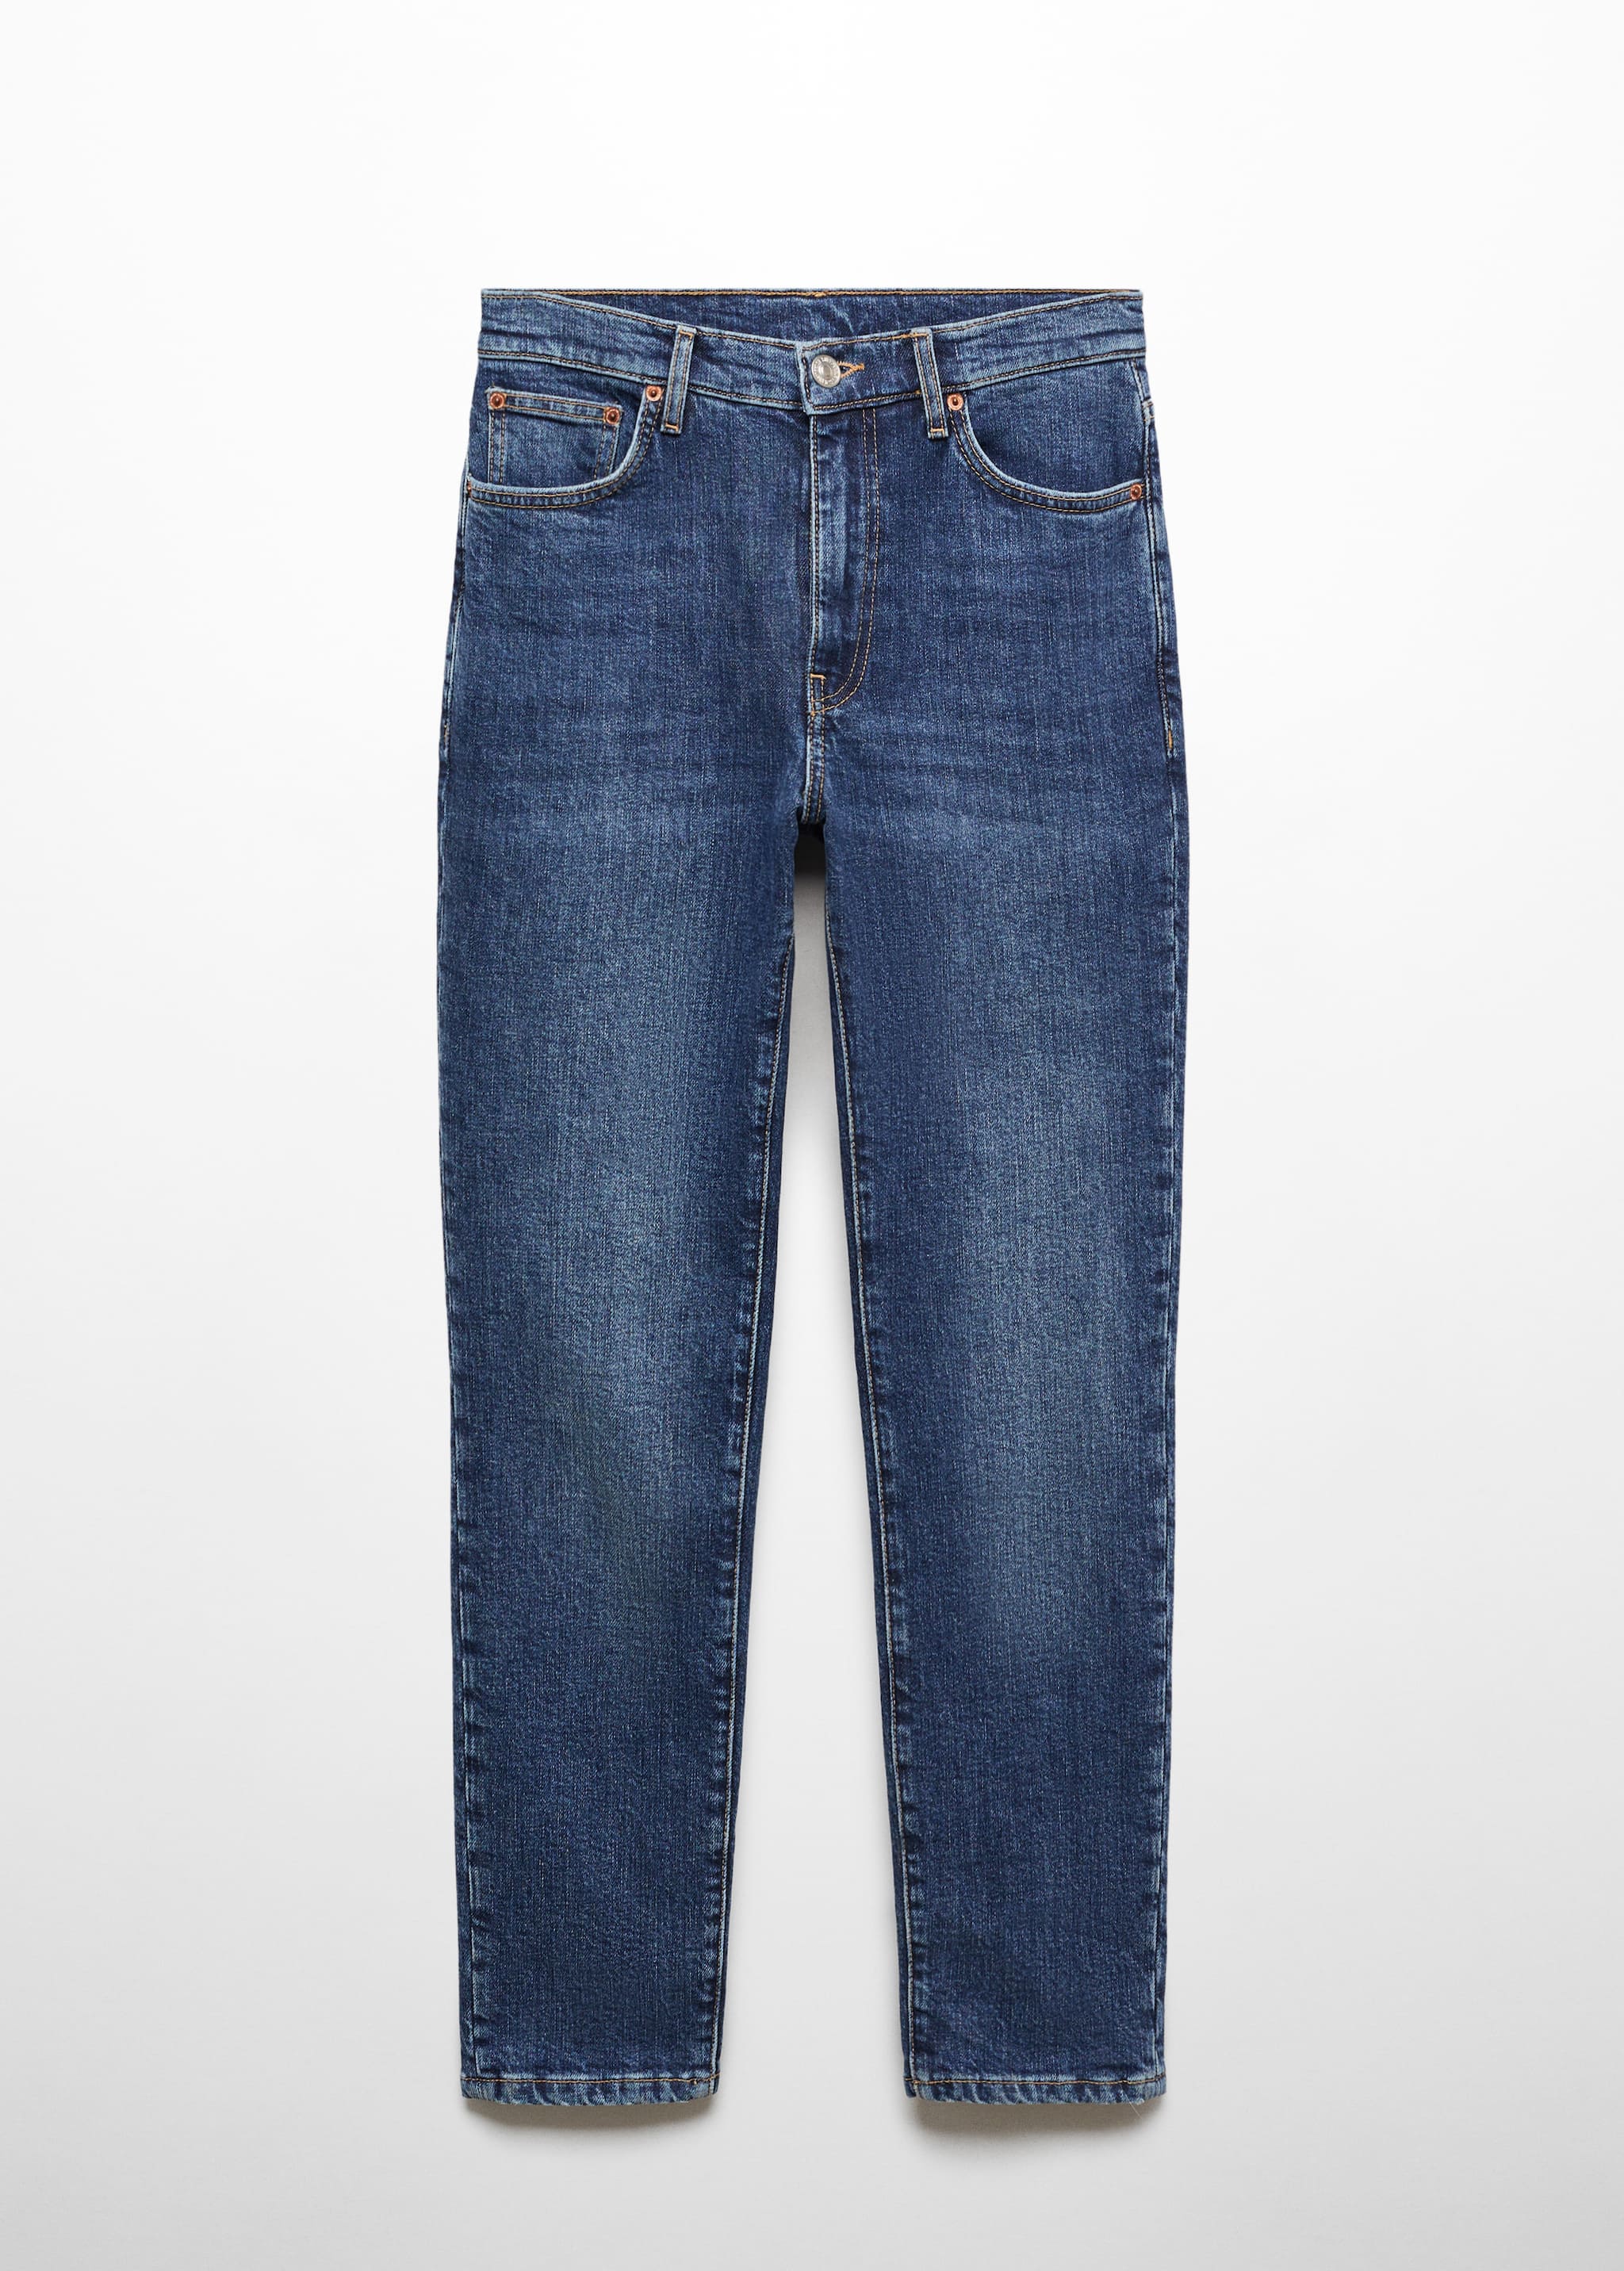 Укороченные джинсы slim - Изделие без модели